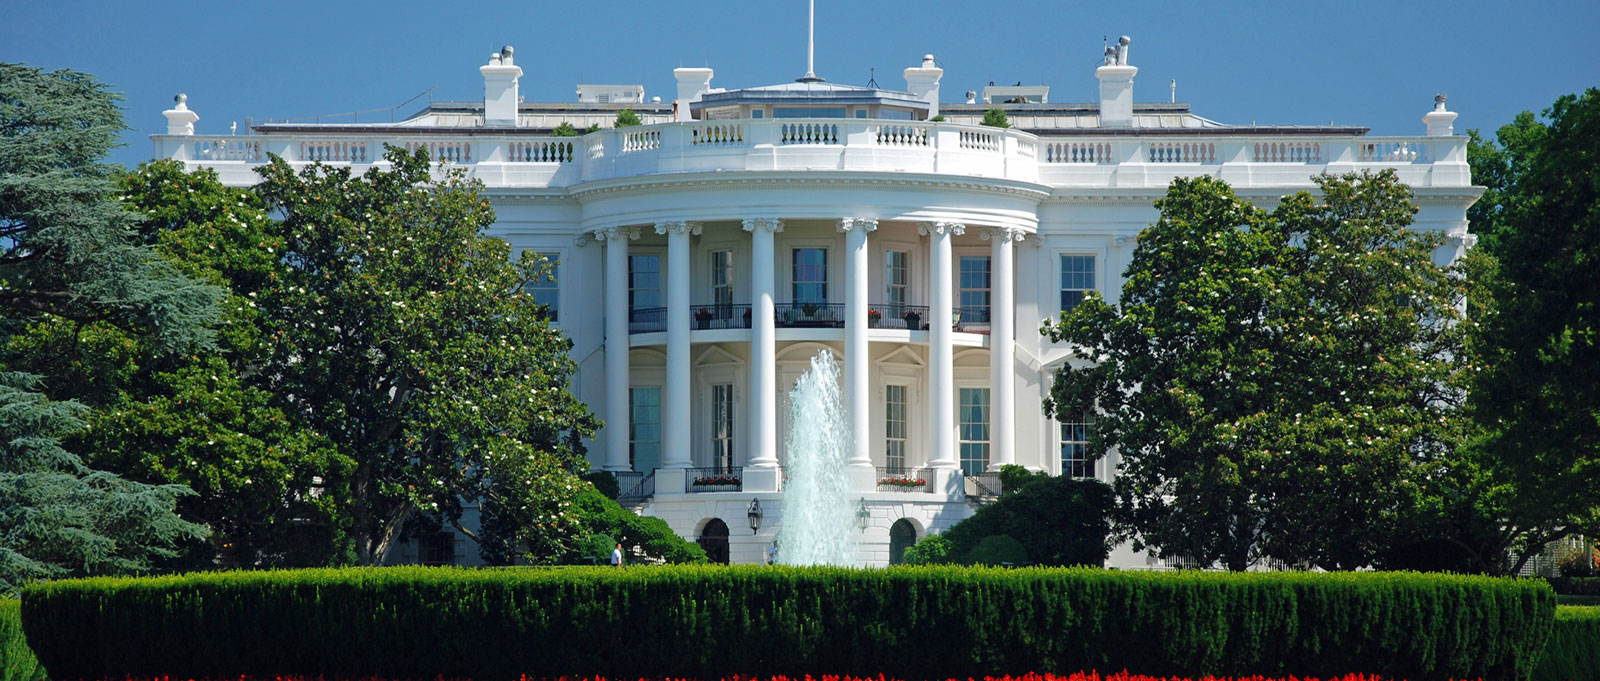 Washington, DC The White House